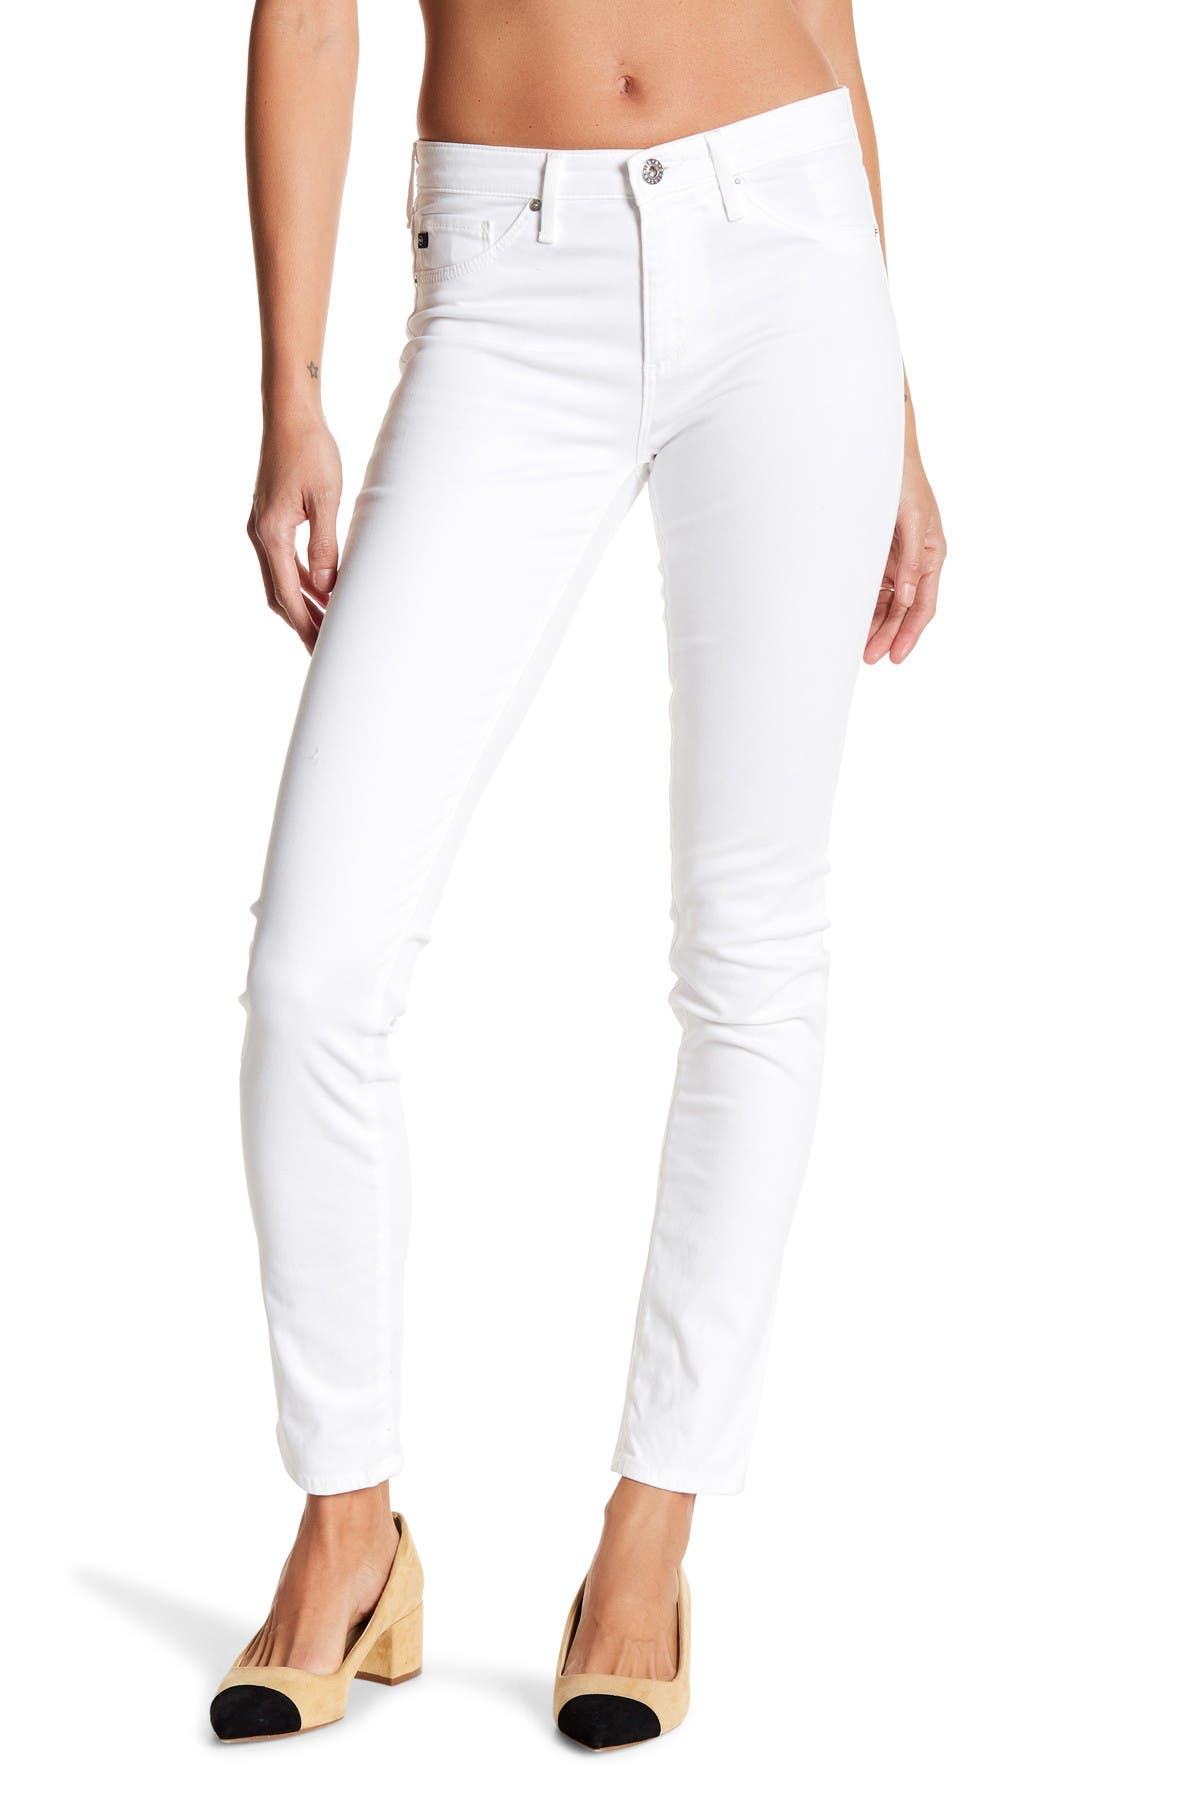 ag white jeans nordstrom rack